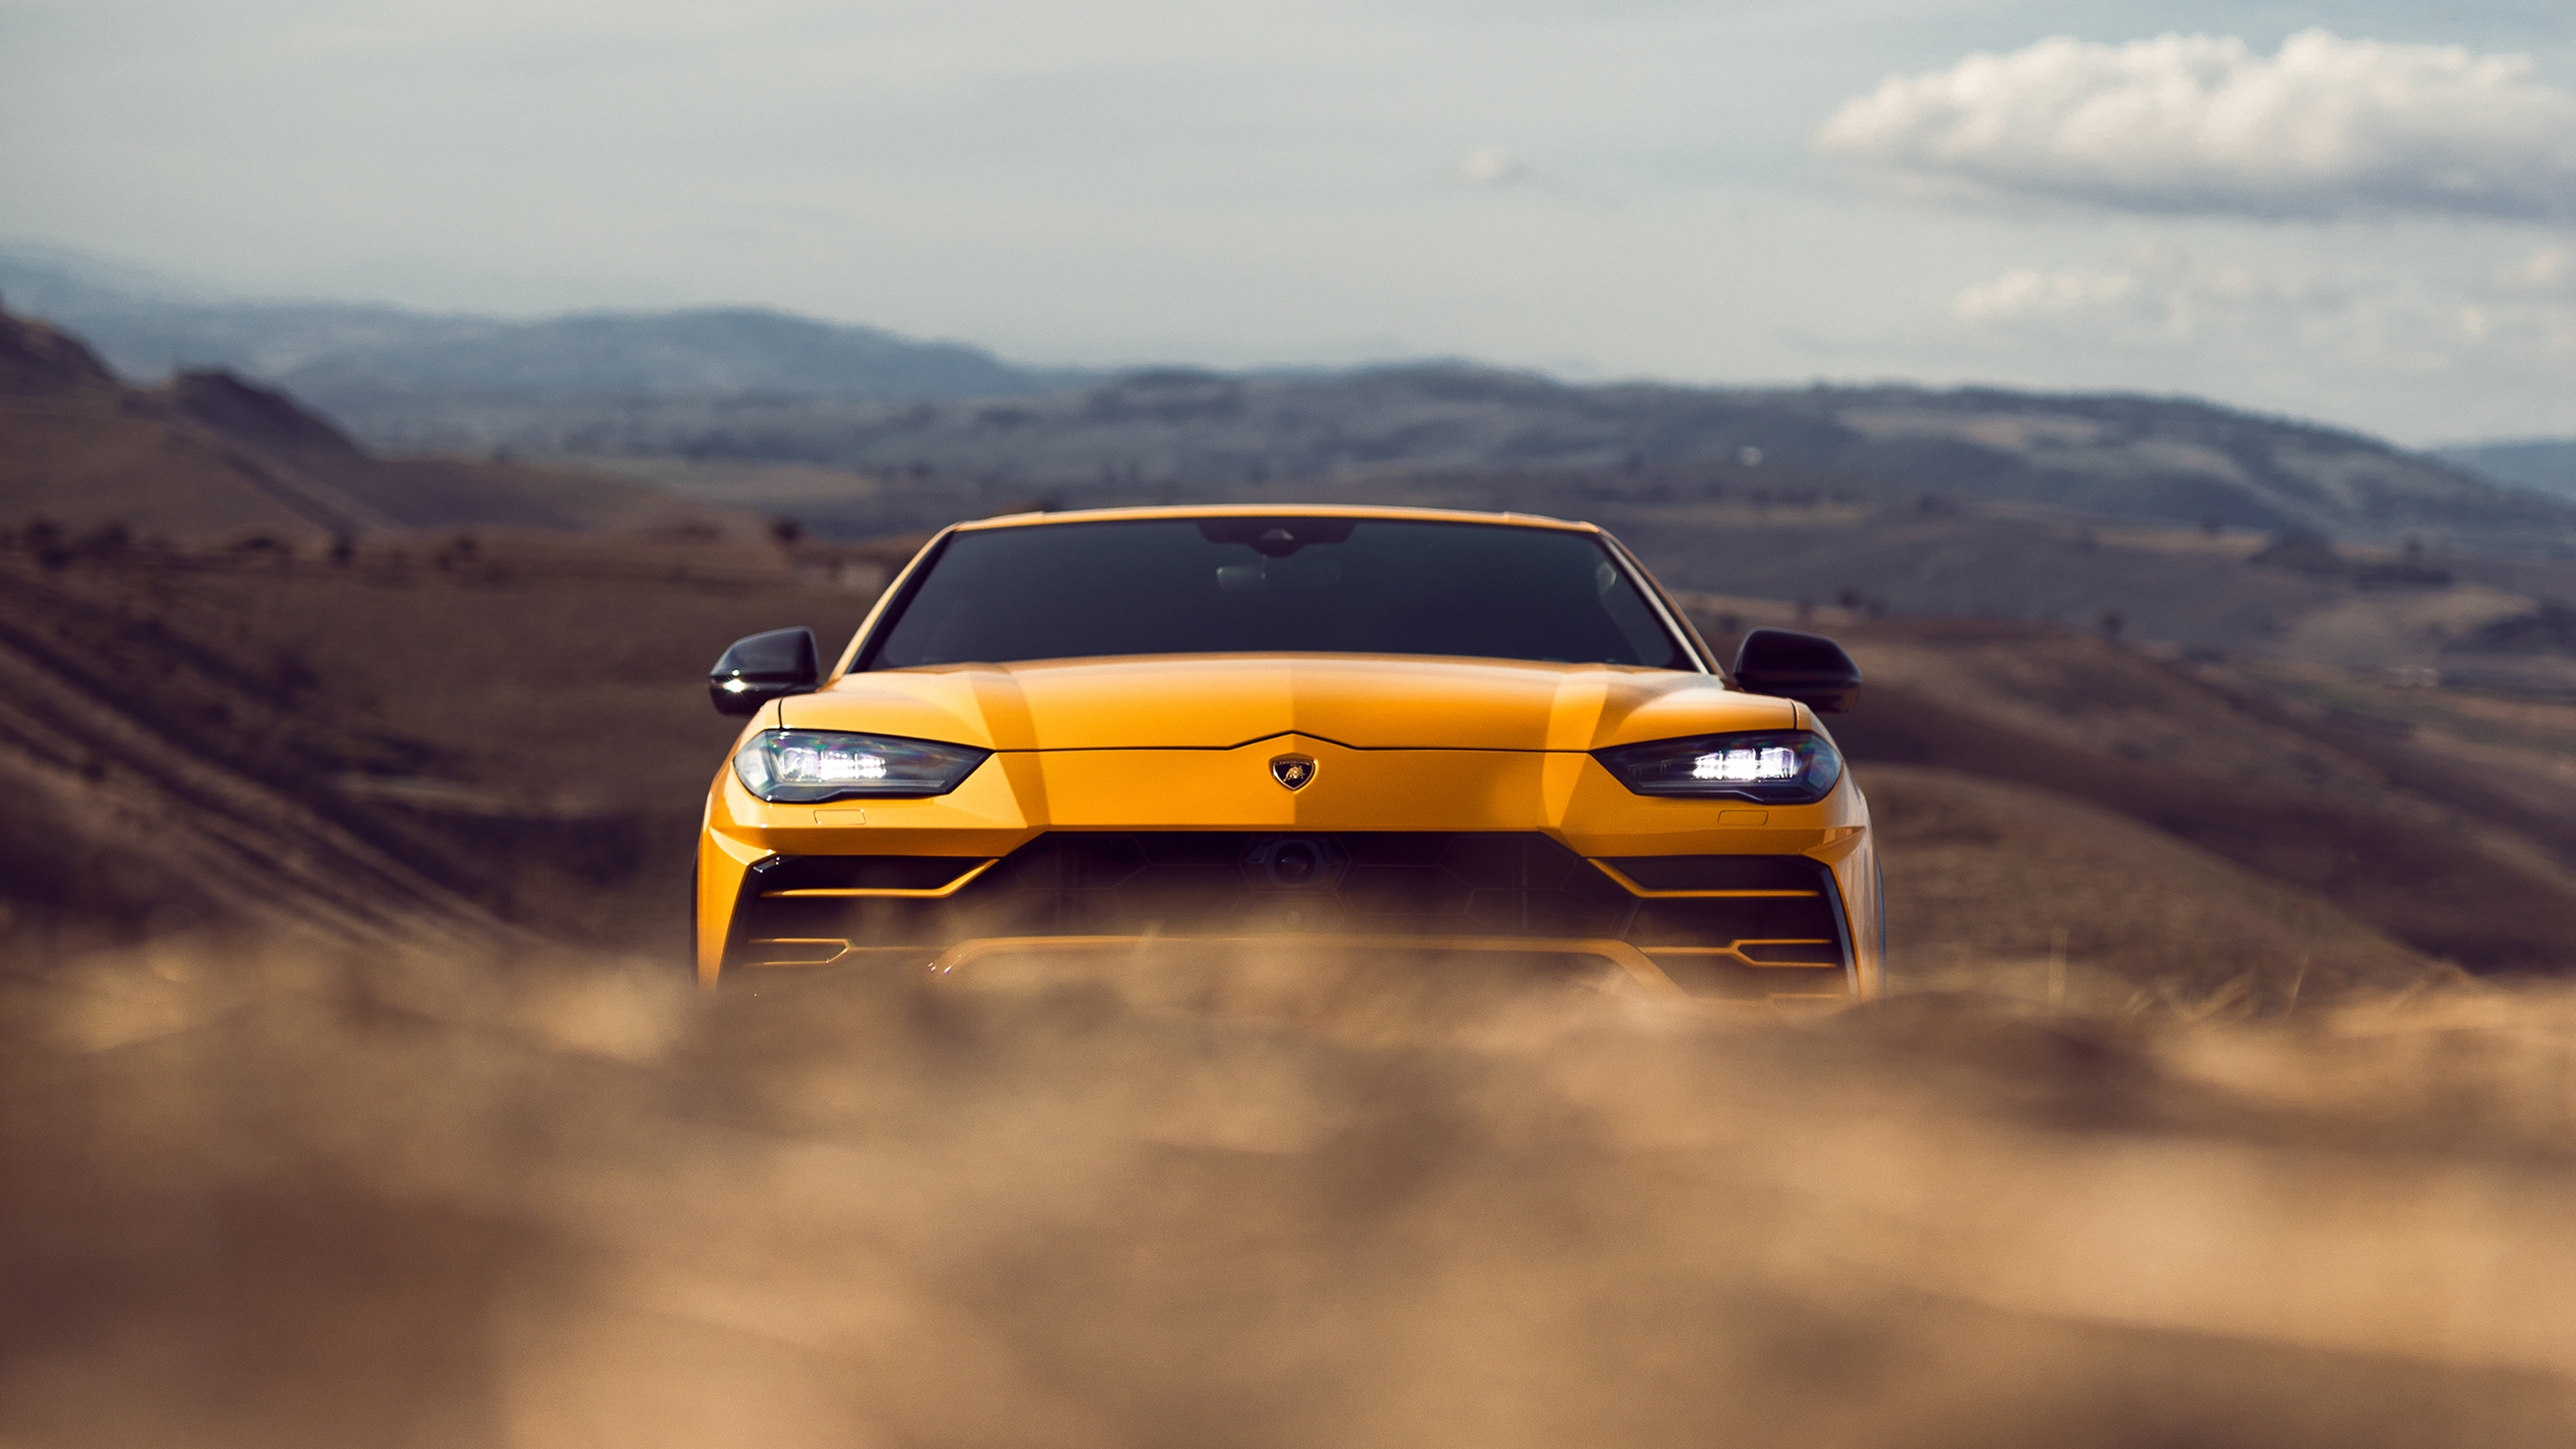 Lamborghini Urus , HD Wallpaper & Backgrounds